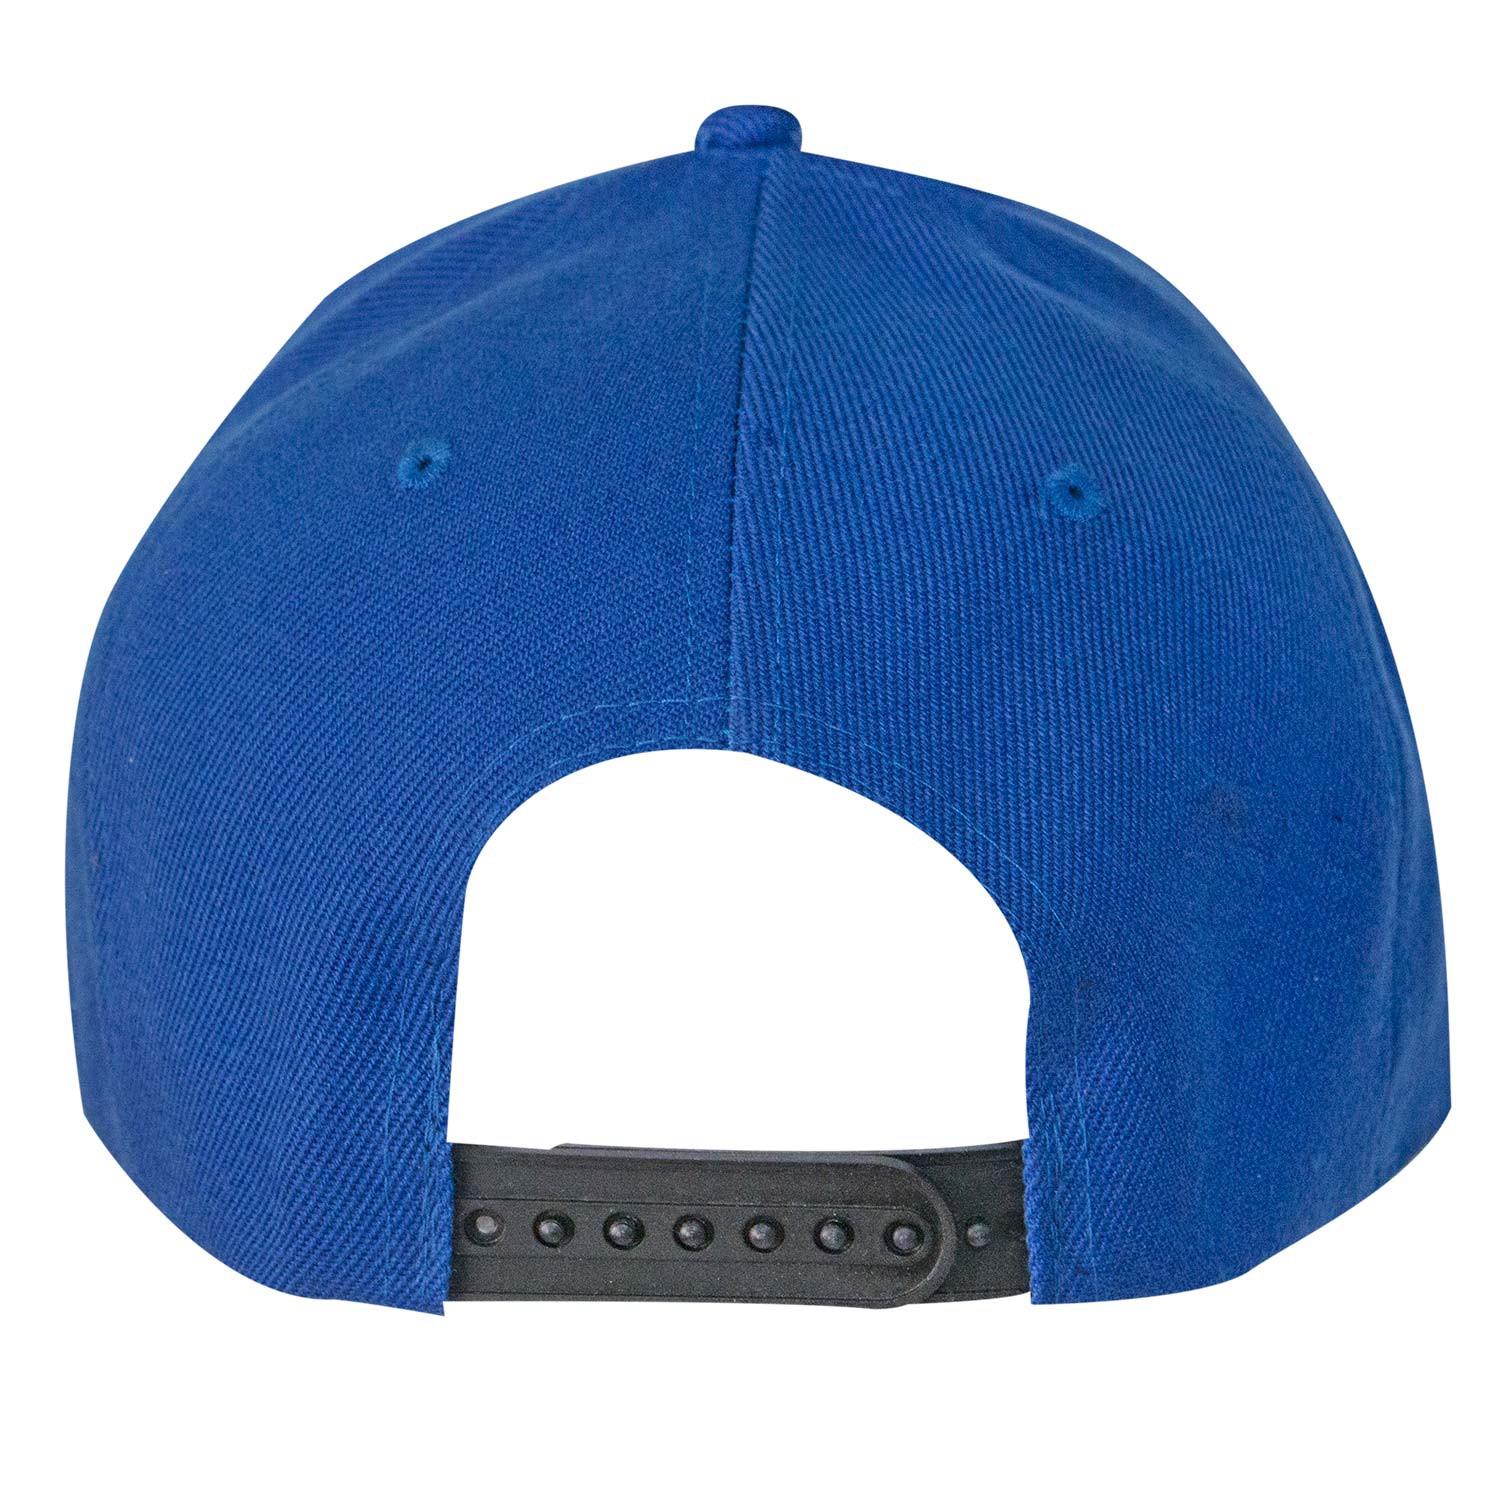 Corona Adjustable Blue & White Hat